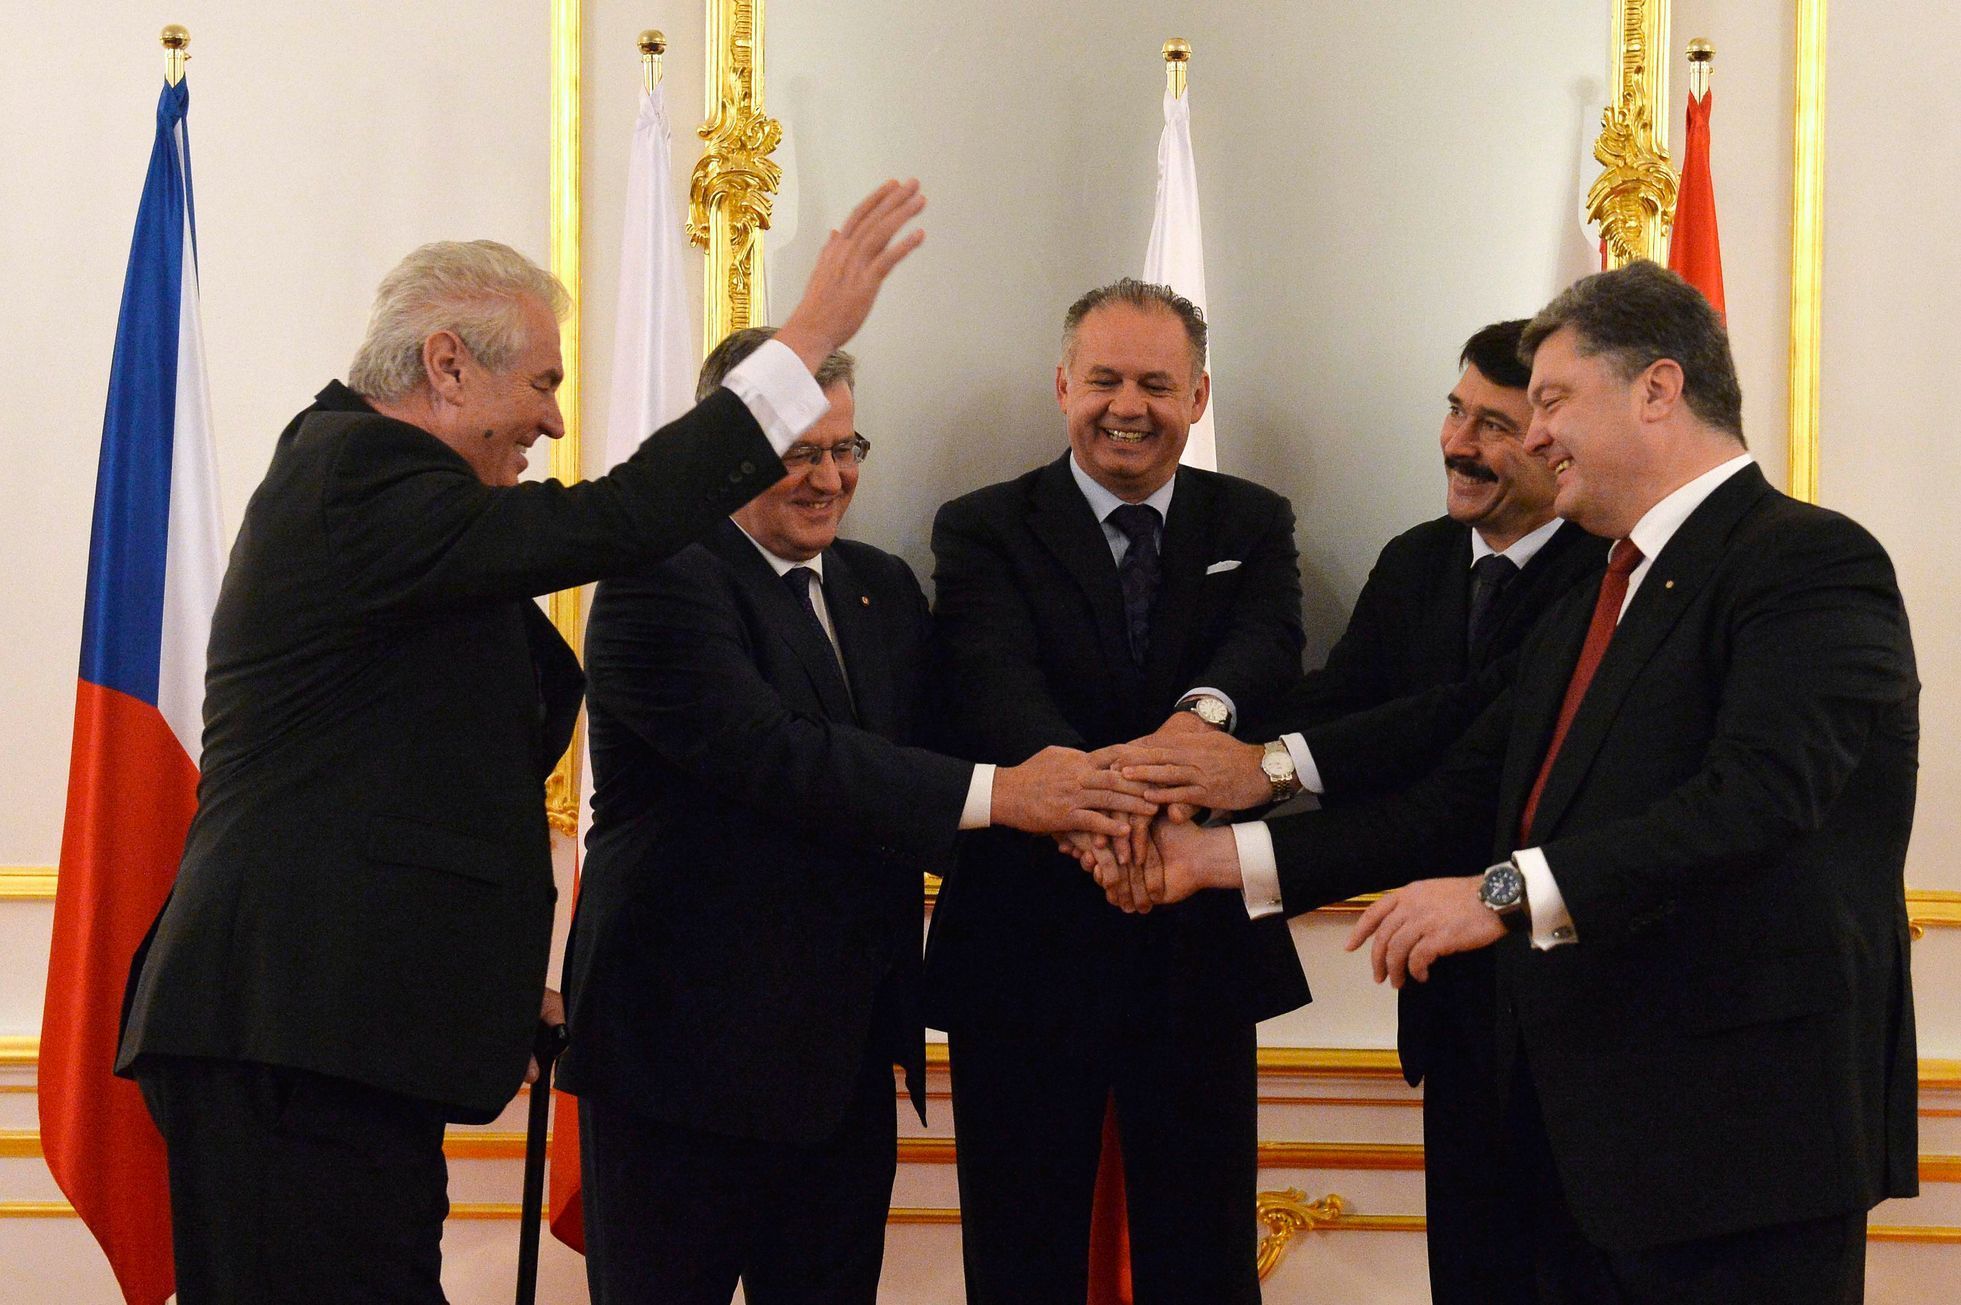 Miloš Zeman, Bronislaw Komorowski, Andrej Kiska, a Petro Porošenko na nedělním summitu v Bratislavě.